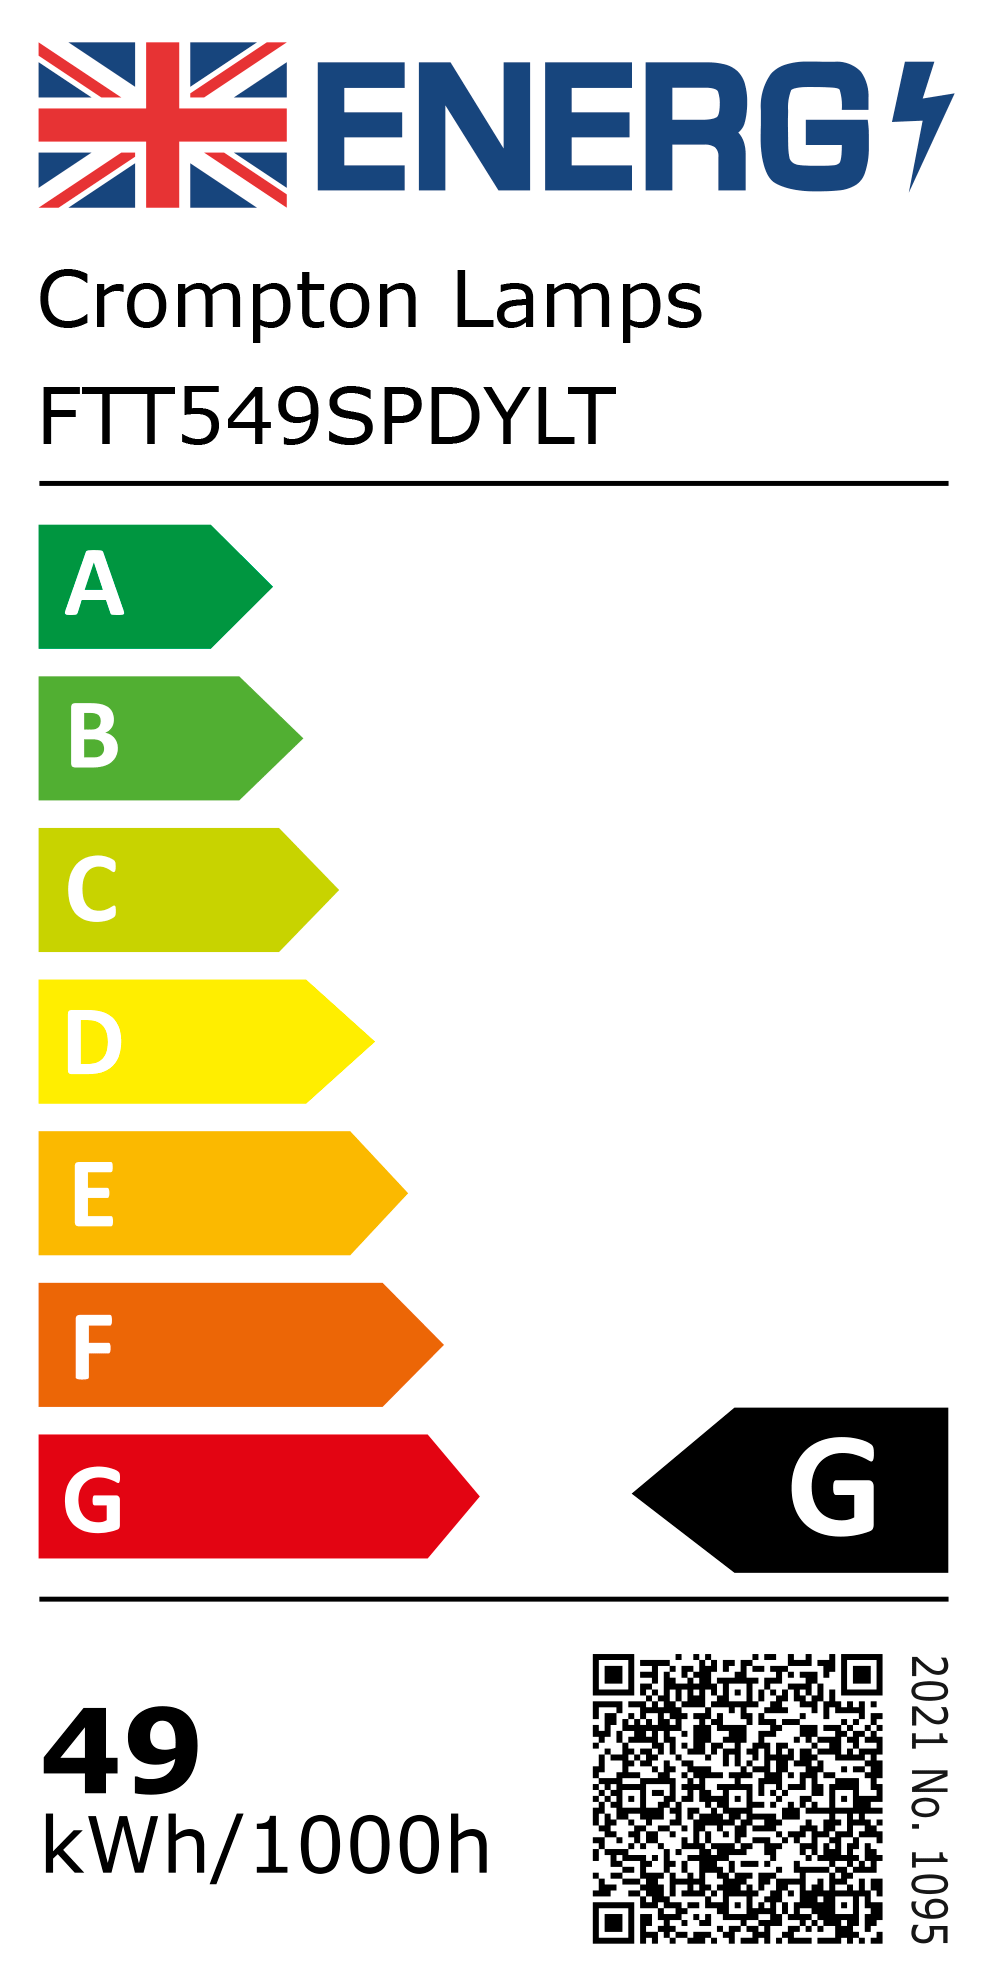 New 2021 Energy Rating Label: Stock Code FTT549SPDYLT